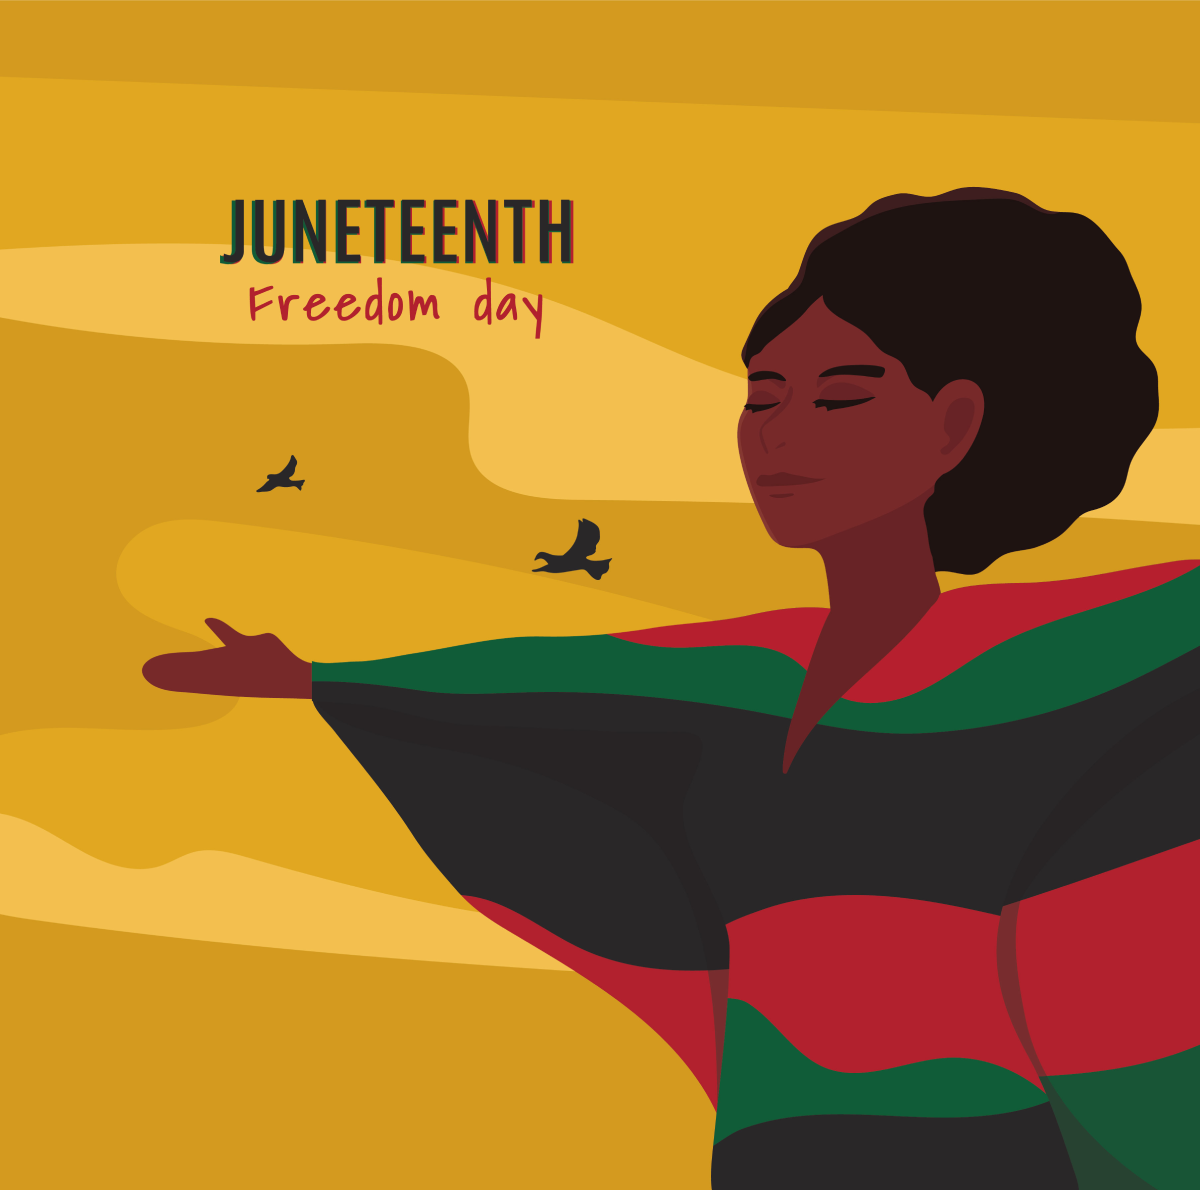 Juneteenth Freedom Day: mujer con un vestido de colores brillantes sosteniendo sus manos mientras 2 pájaros pasan volando